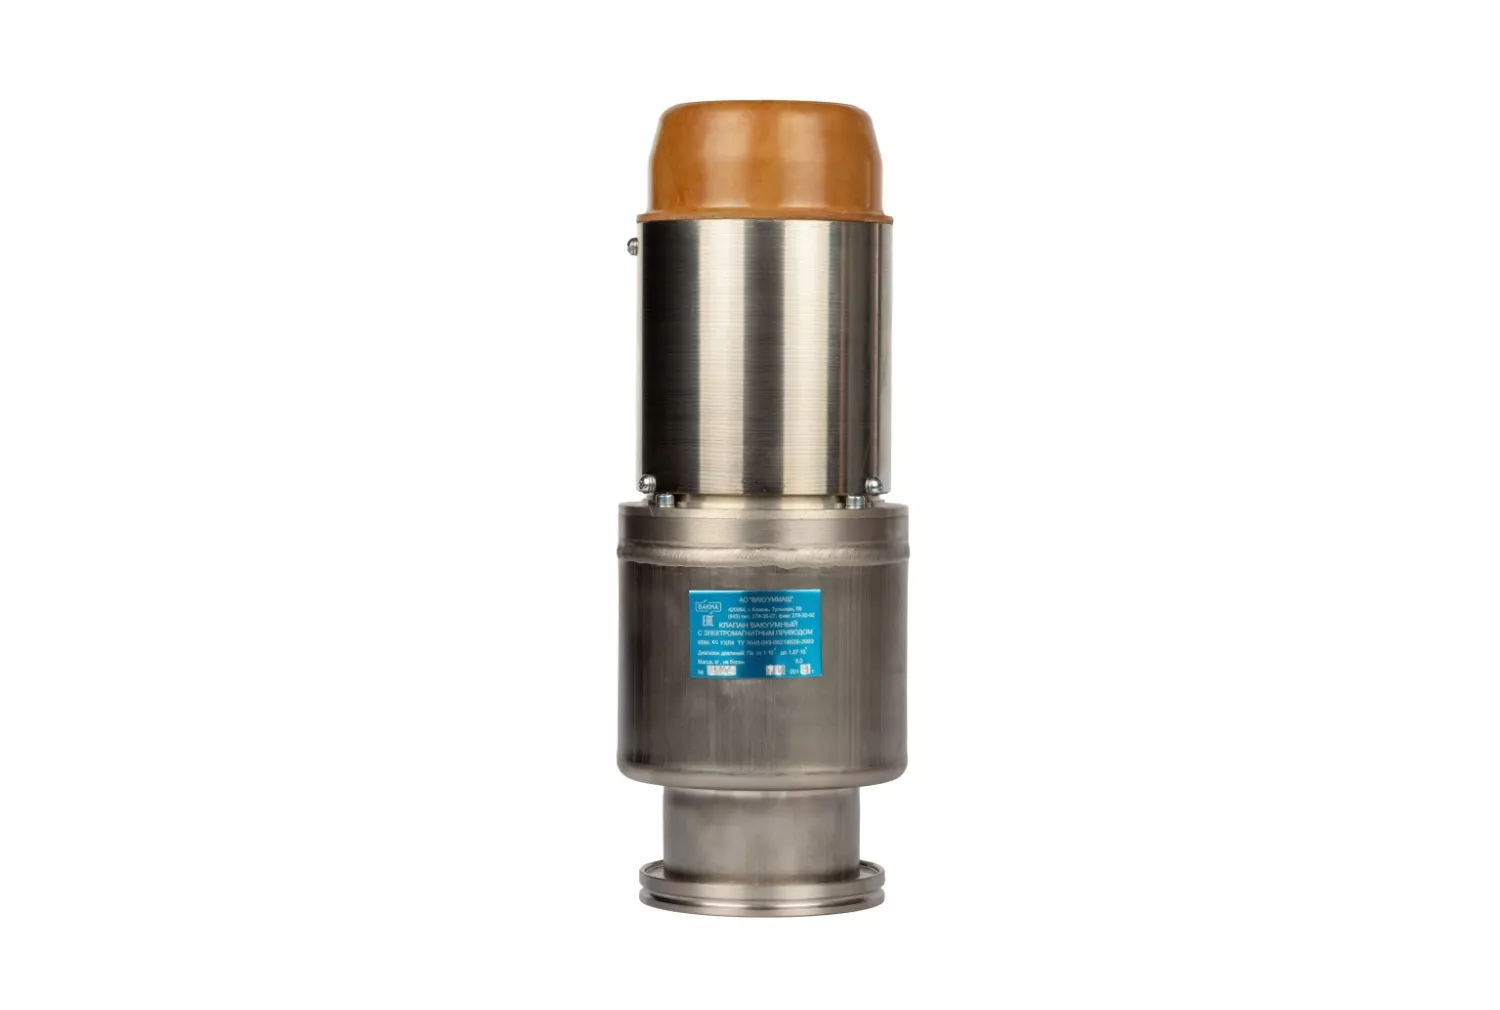 Купить в АО Вакууммаш ✓ Электромагнитный вакуумный клапан КВМ-25 ✦ узнать цены и отзывы в каталоге